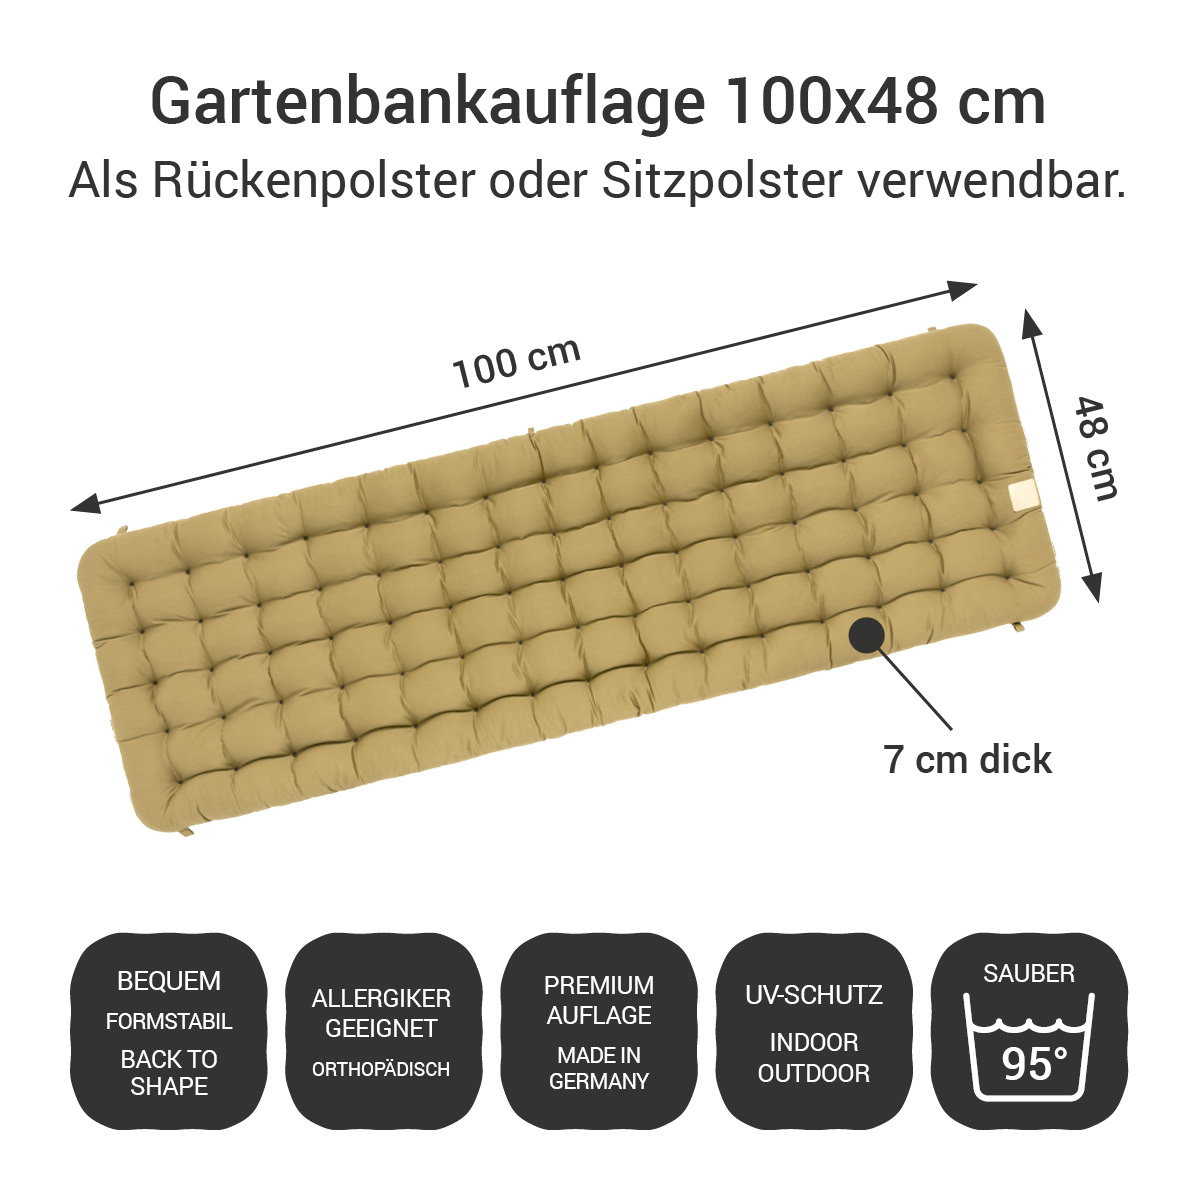 Gartenbank Auflage beige 100x48 cm / 100 x 50 cm | bequem & orthopädisch, komplett im Ganzen waschbar bis 95°C, wetterfest, Made in Germany